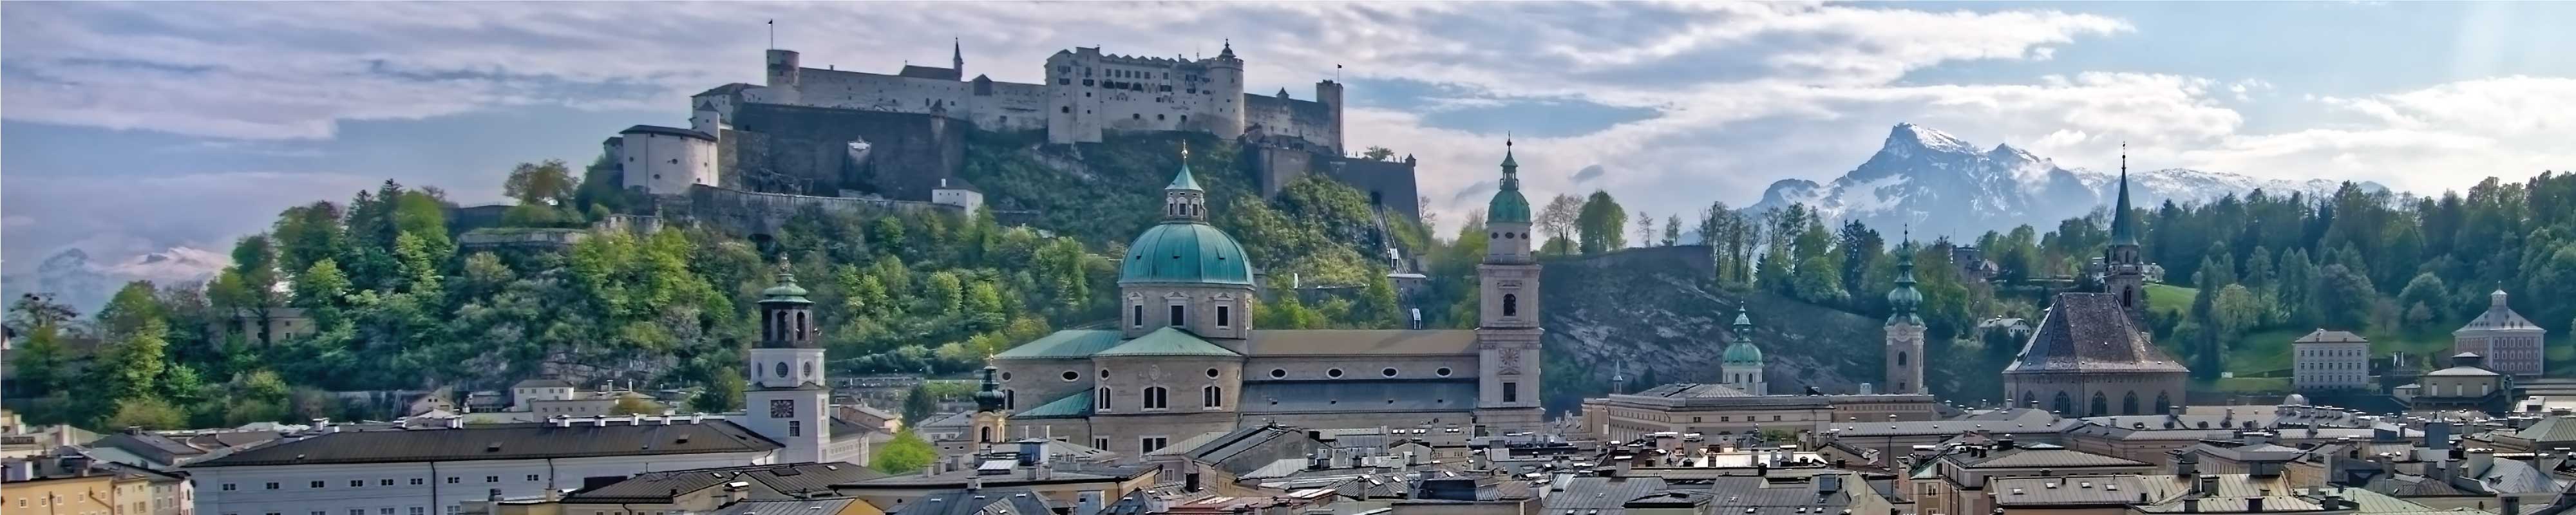 Gepäckaufbewahrung | Salzburg - Nannybag